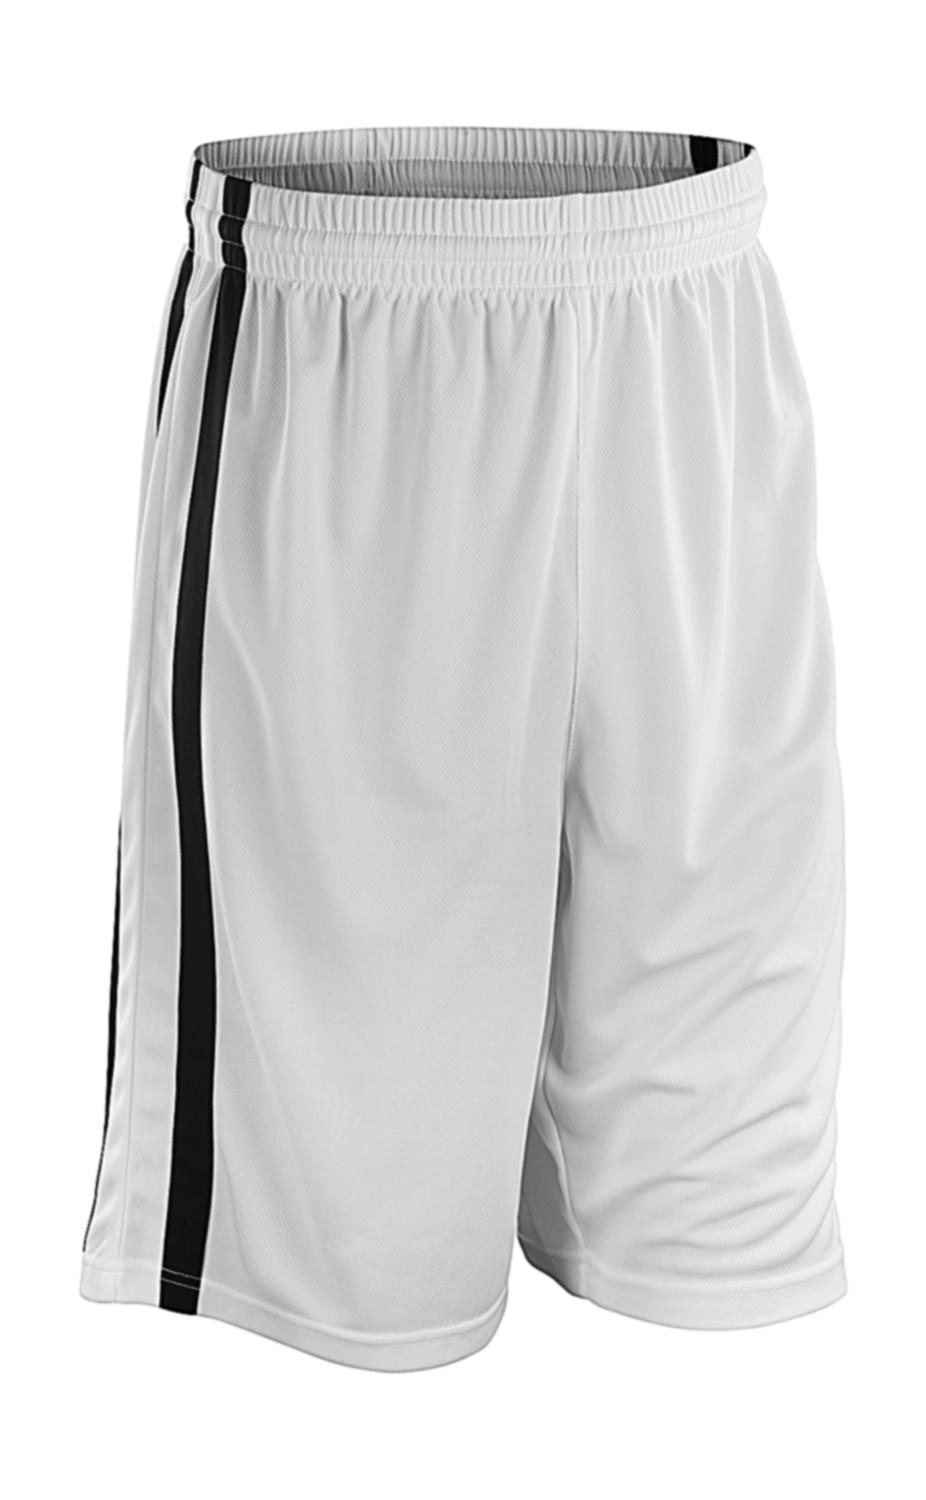 Men`s Quick Dry Basketball Shorts zum Besticken und Bedrucken in der Farbe White/Black mit Ihren Logo, Schriftzug oder Motiv.